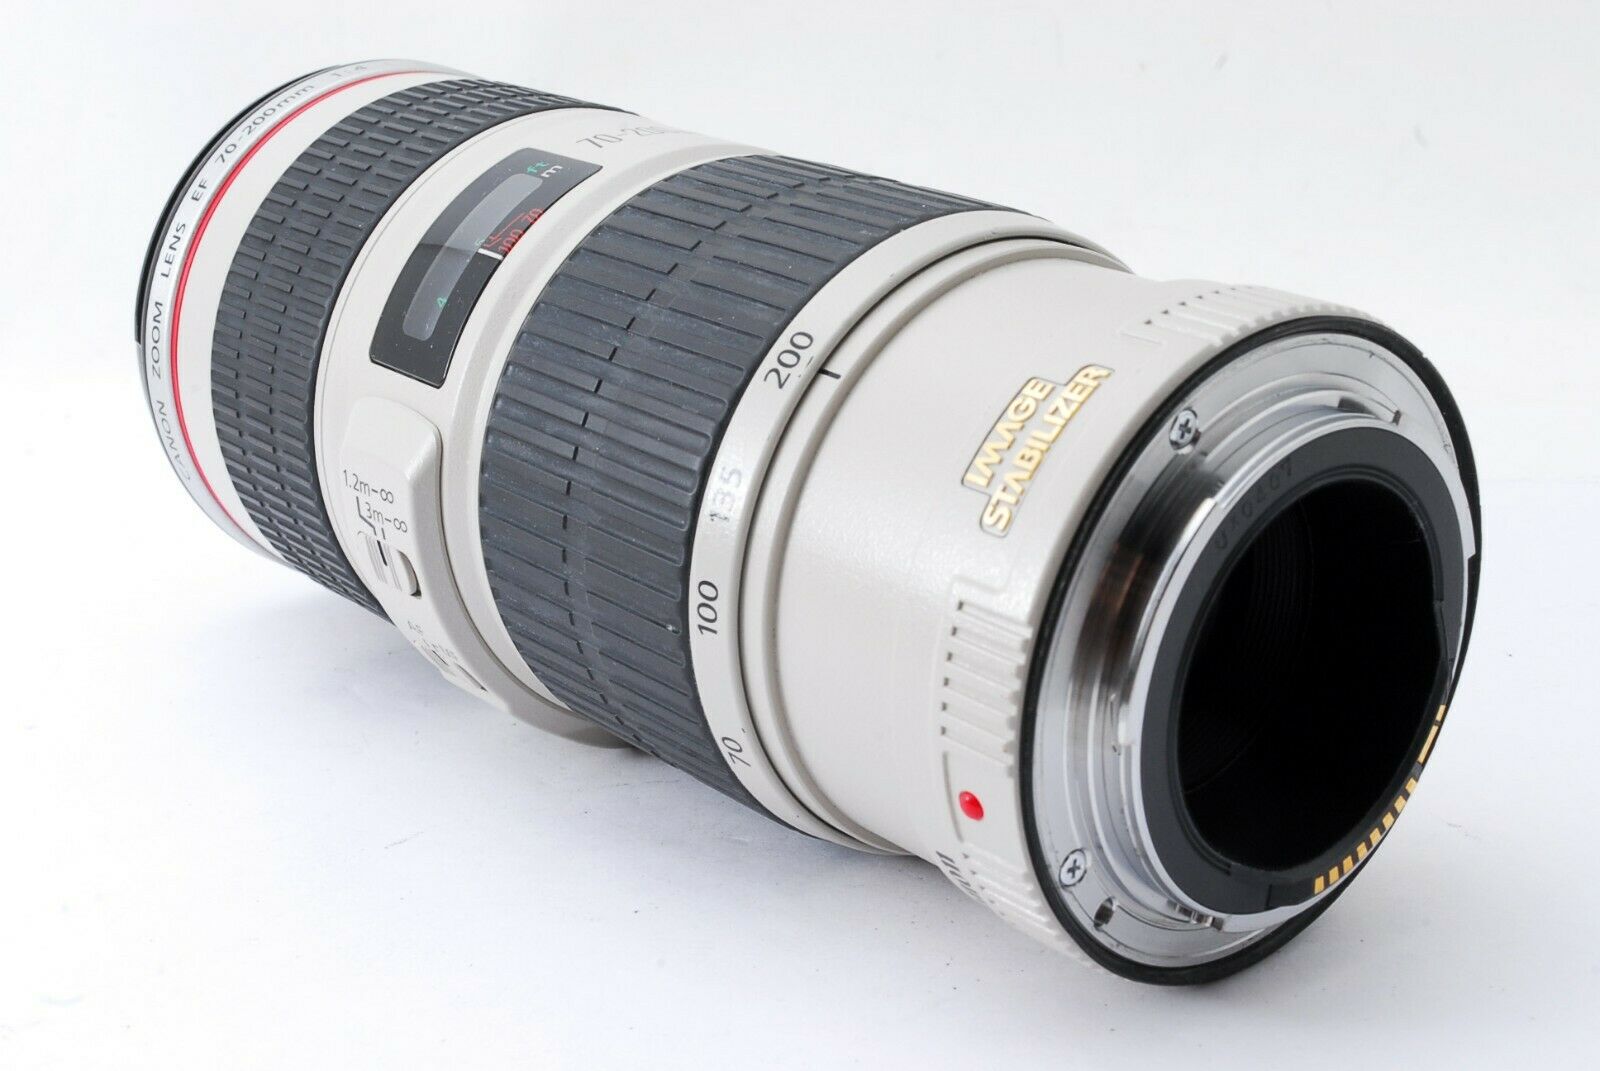 [Mint] Canon EF 70-200mm f/4 L IS USM Telephoto Lens w/ Hood